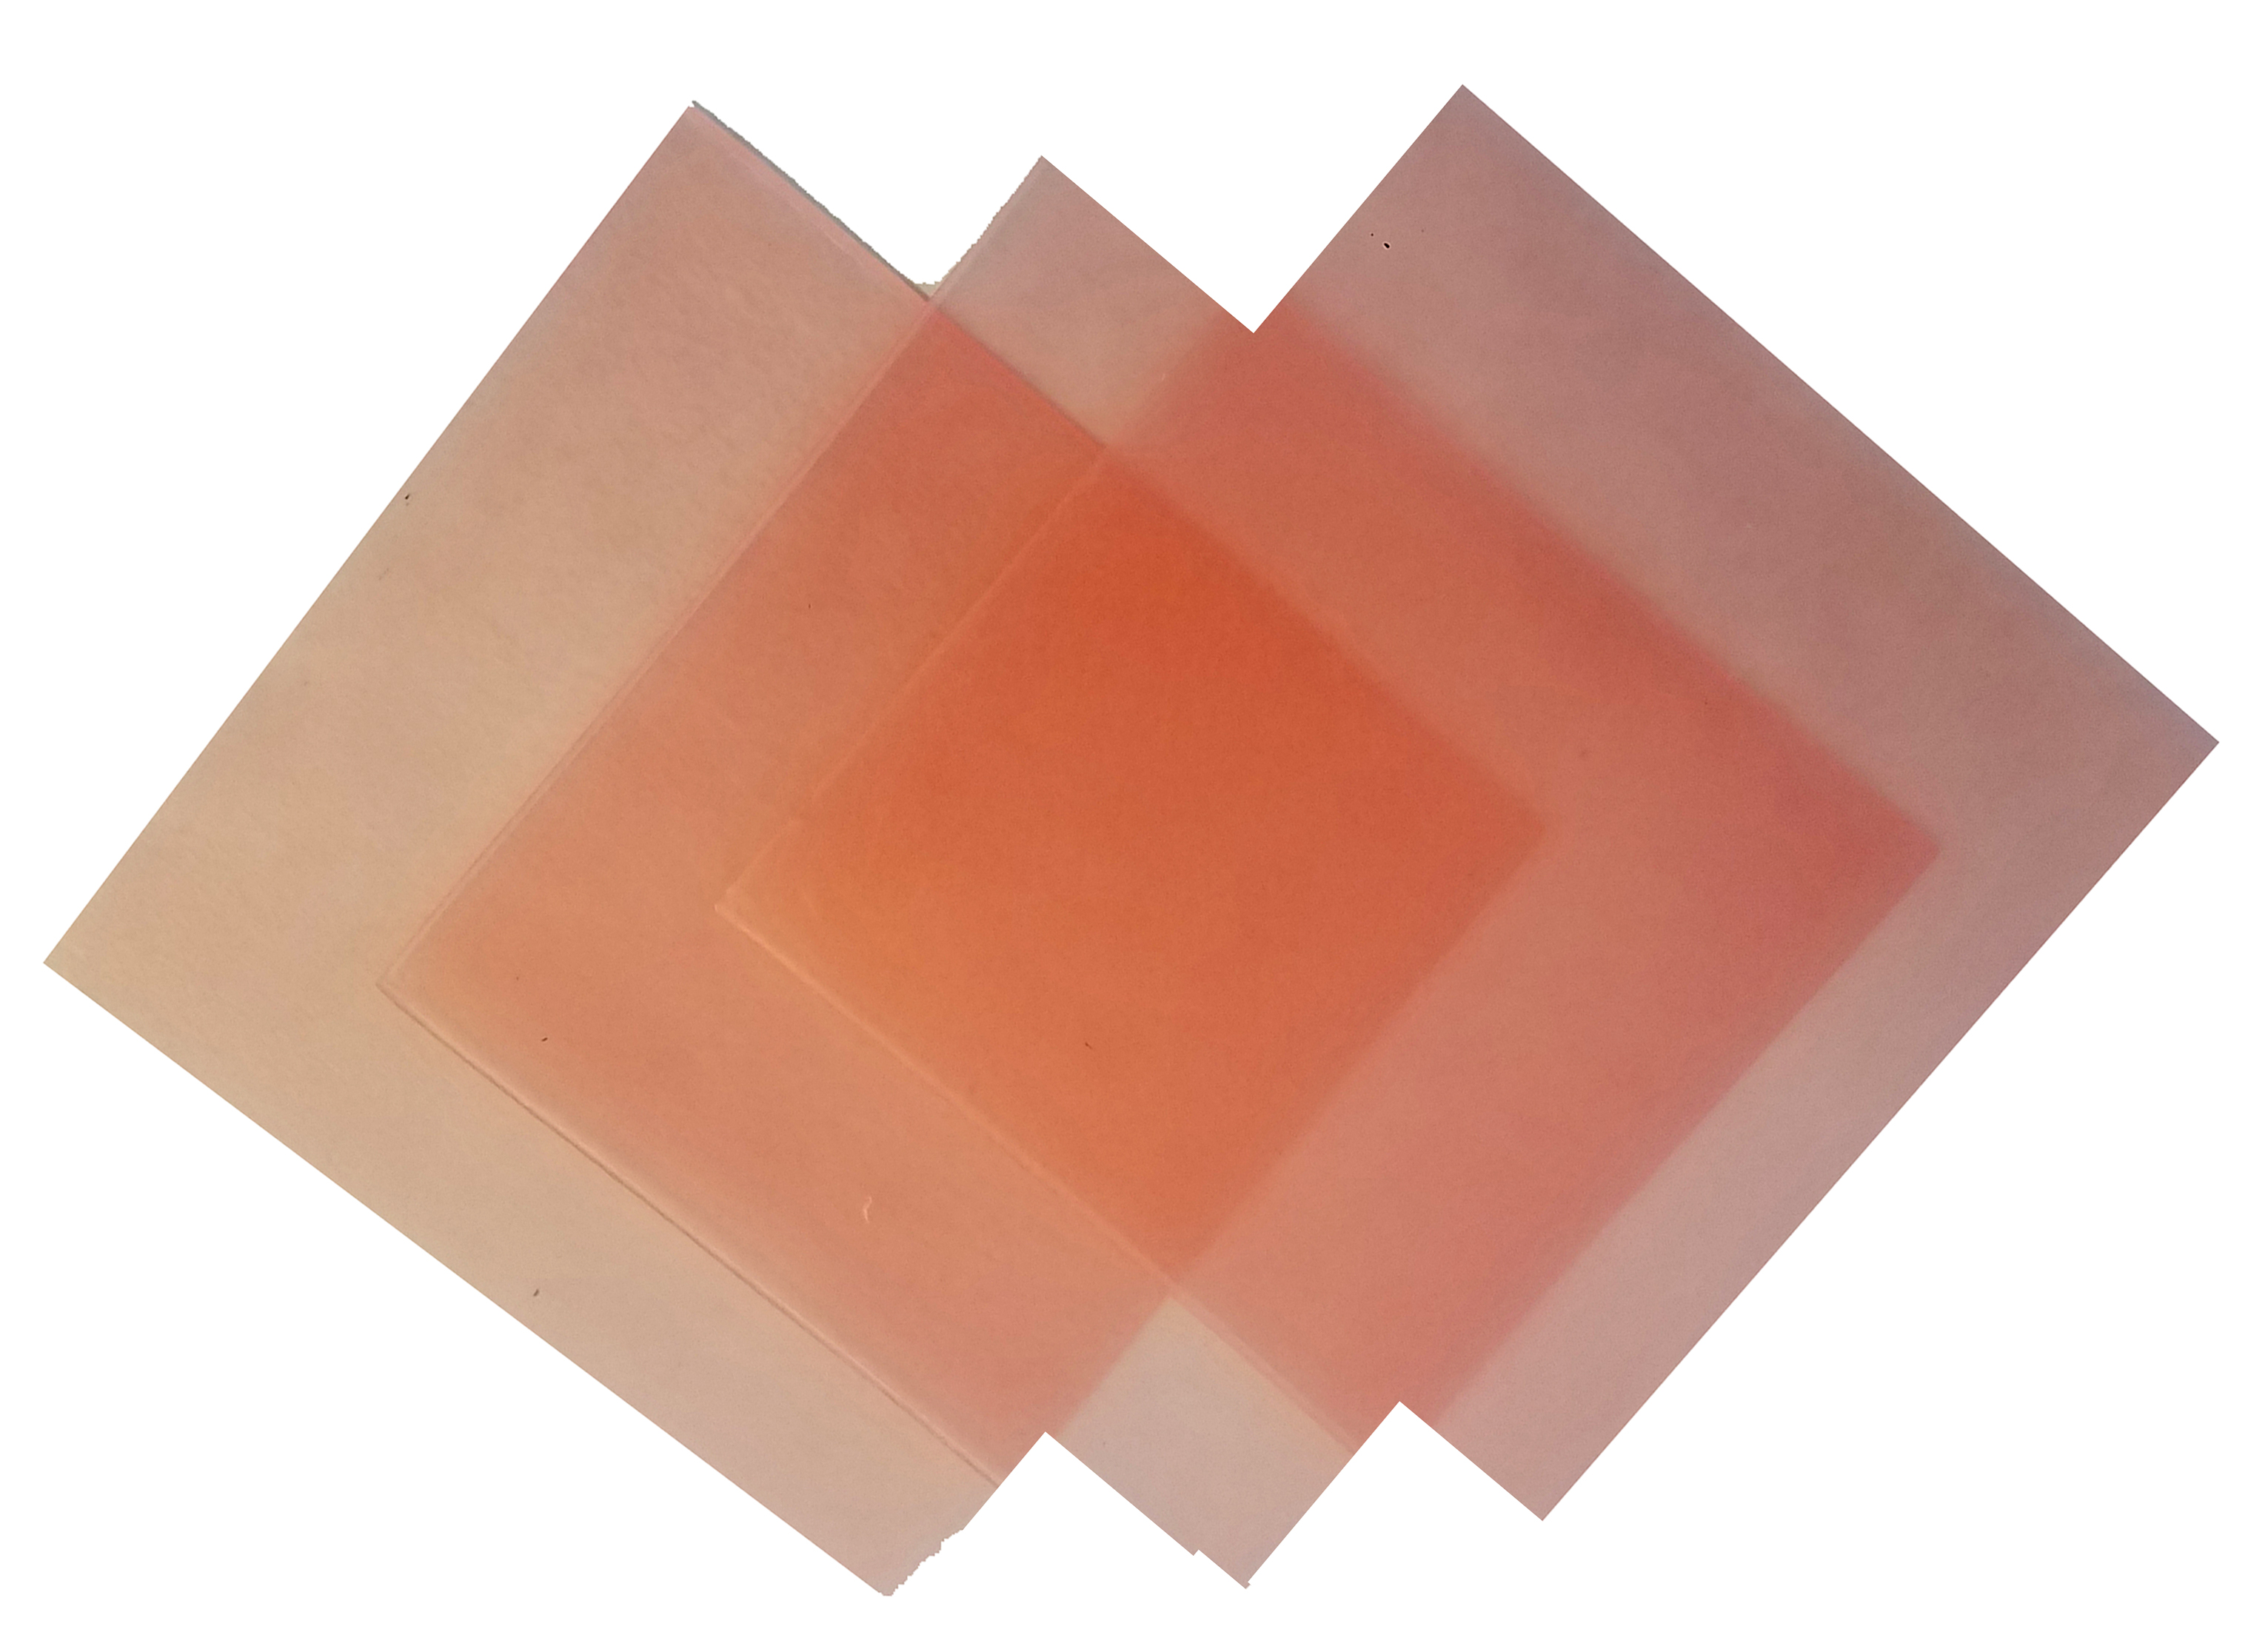 4"x4" sheet wax 28 gauge pink